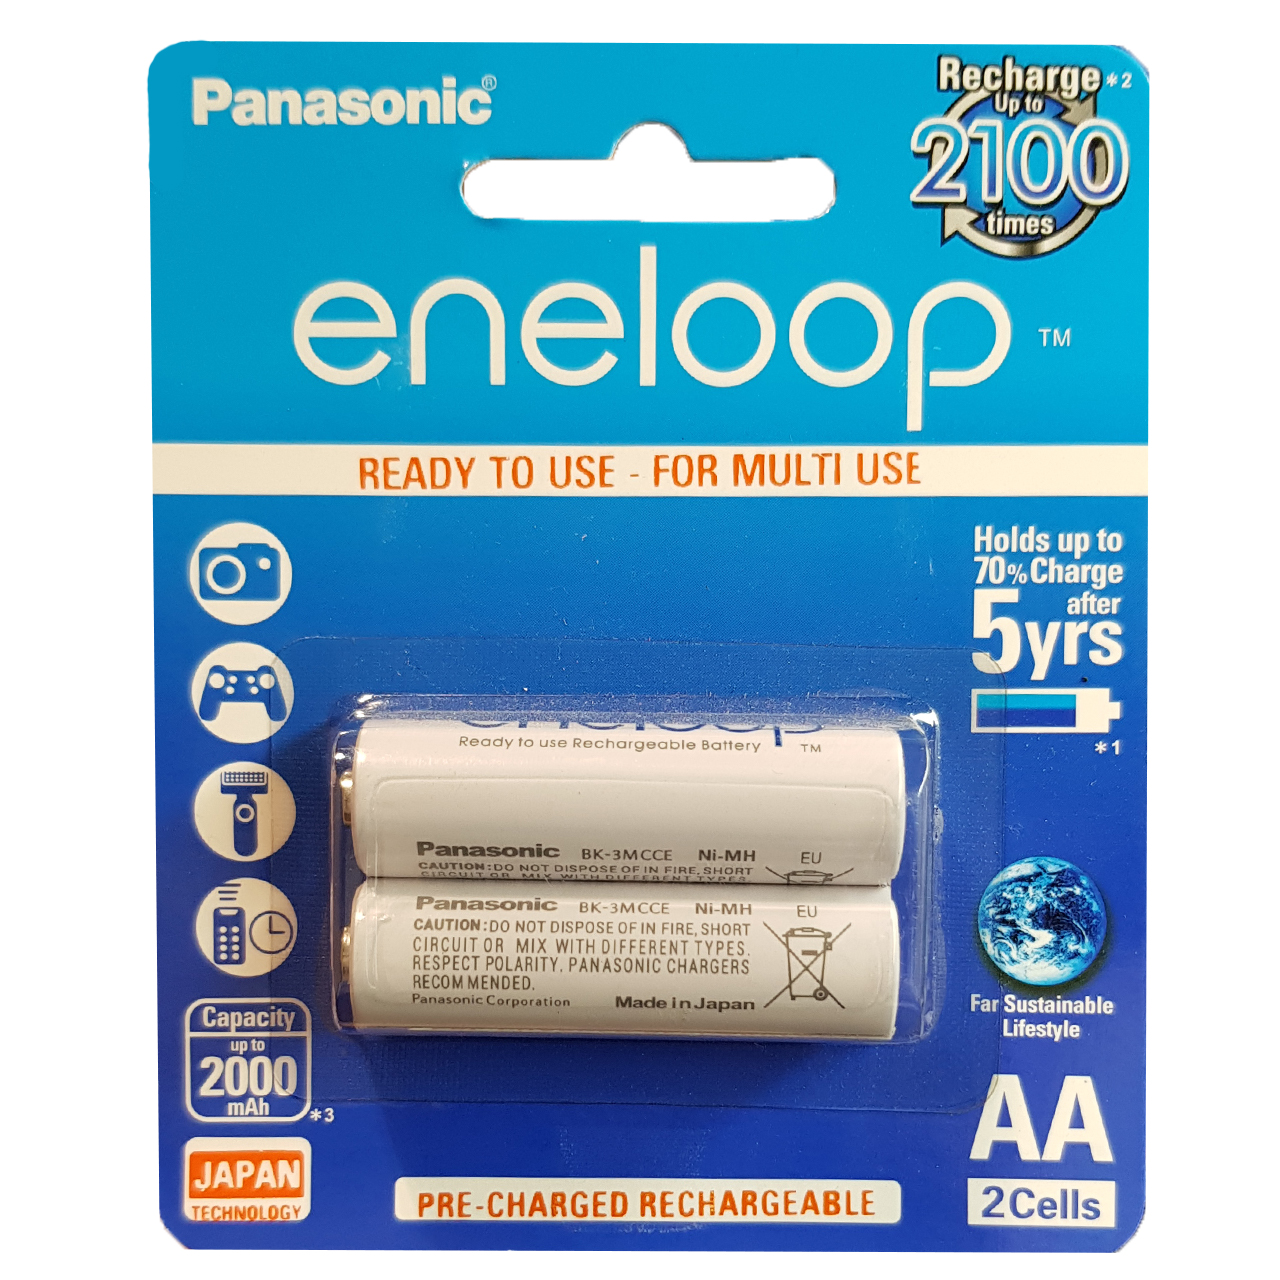 نقد و بررسی باتری قلمی قابل شارژ پاناسونیک مدل Eneloop JAPAN Techoilogy بسته 2 عددی توسط خریداران